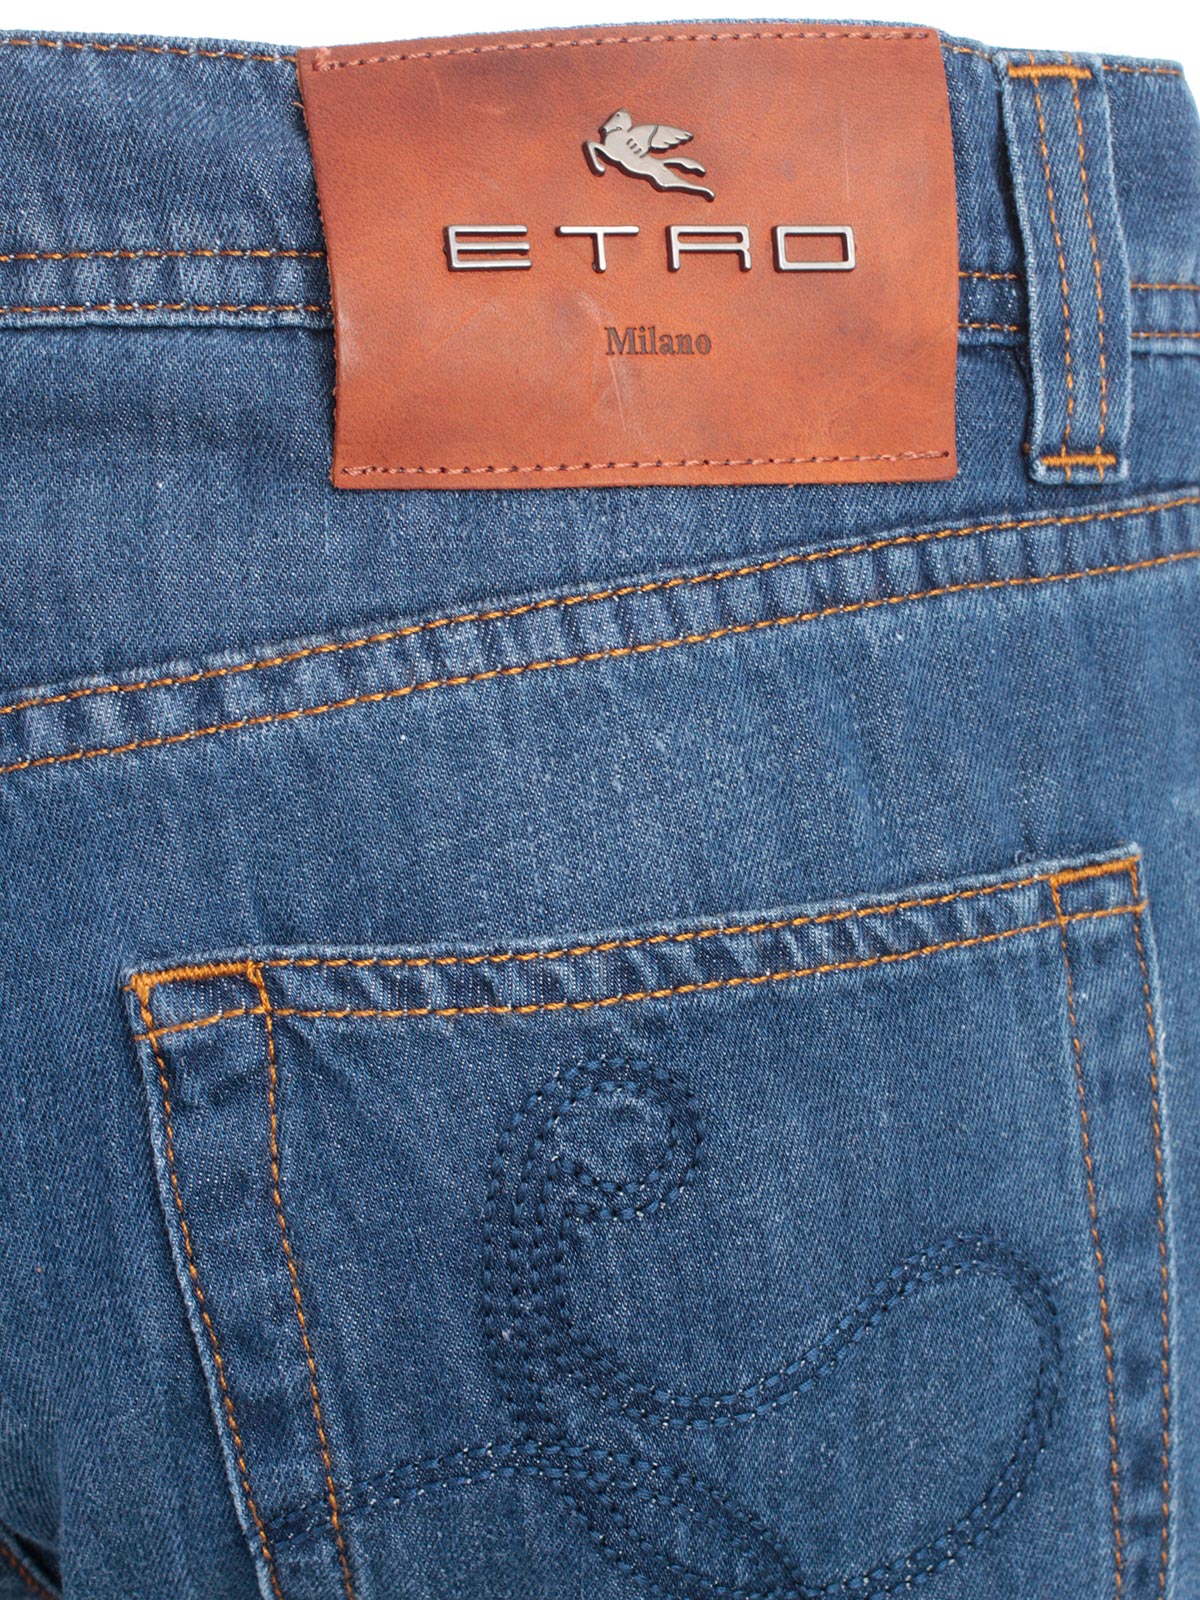 etro jeans price